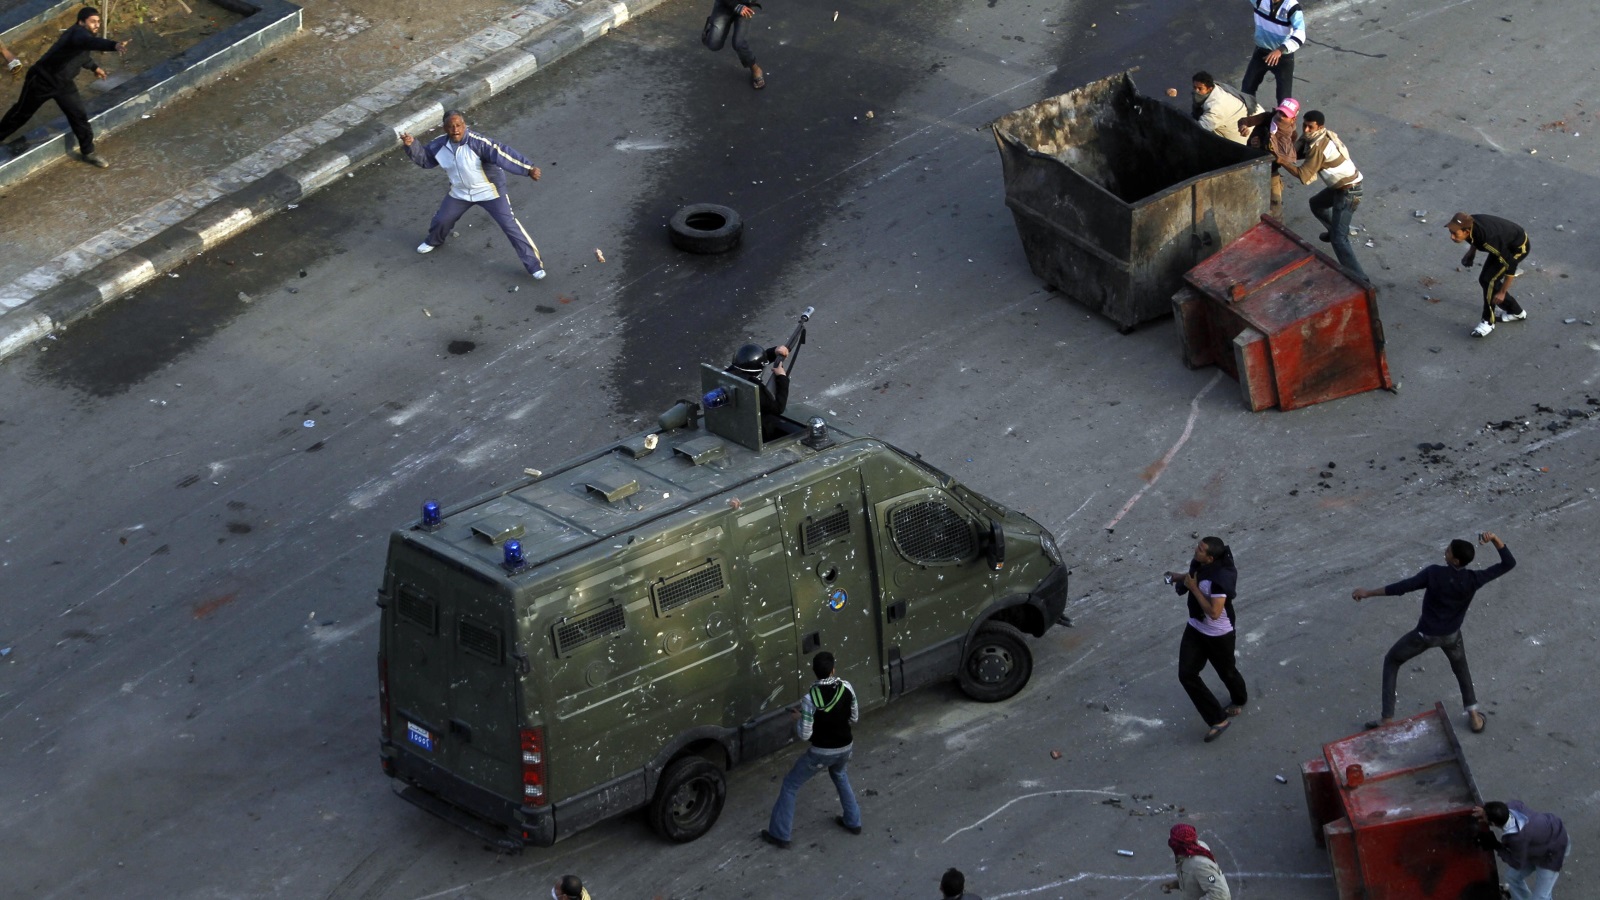 في السويس شرق القاهرة سقط أول قتيل في الثورة المصرية على يد الشرطة رويترز